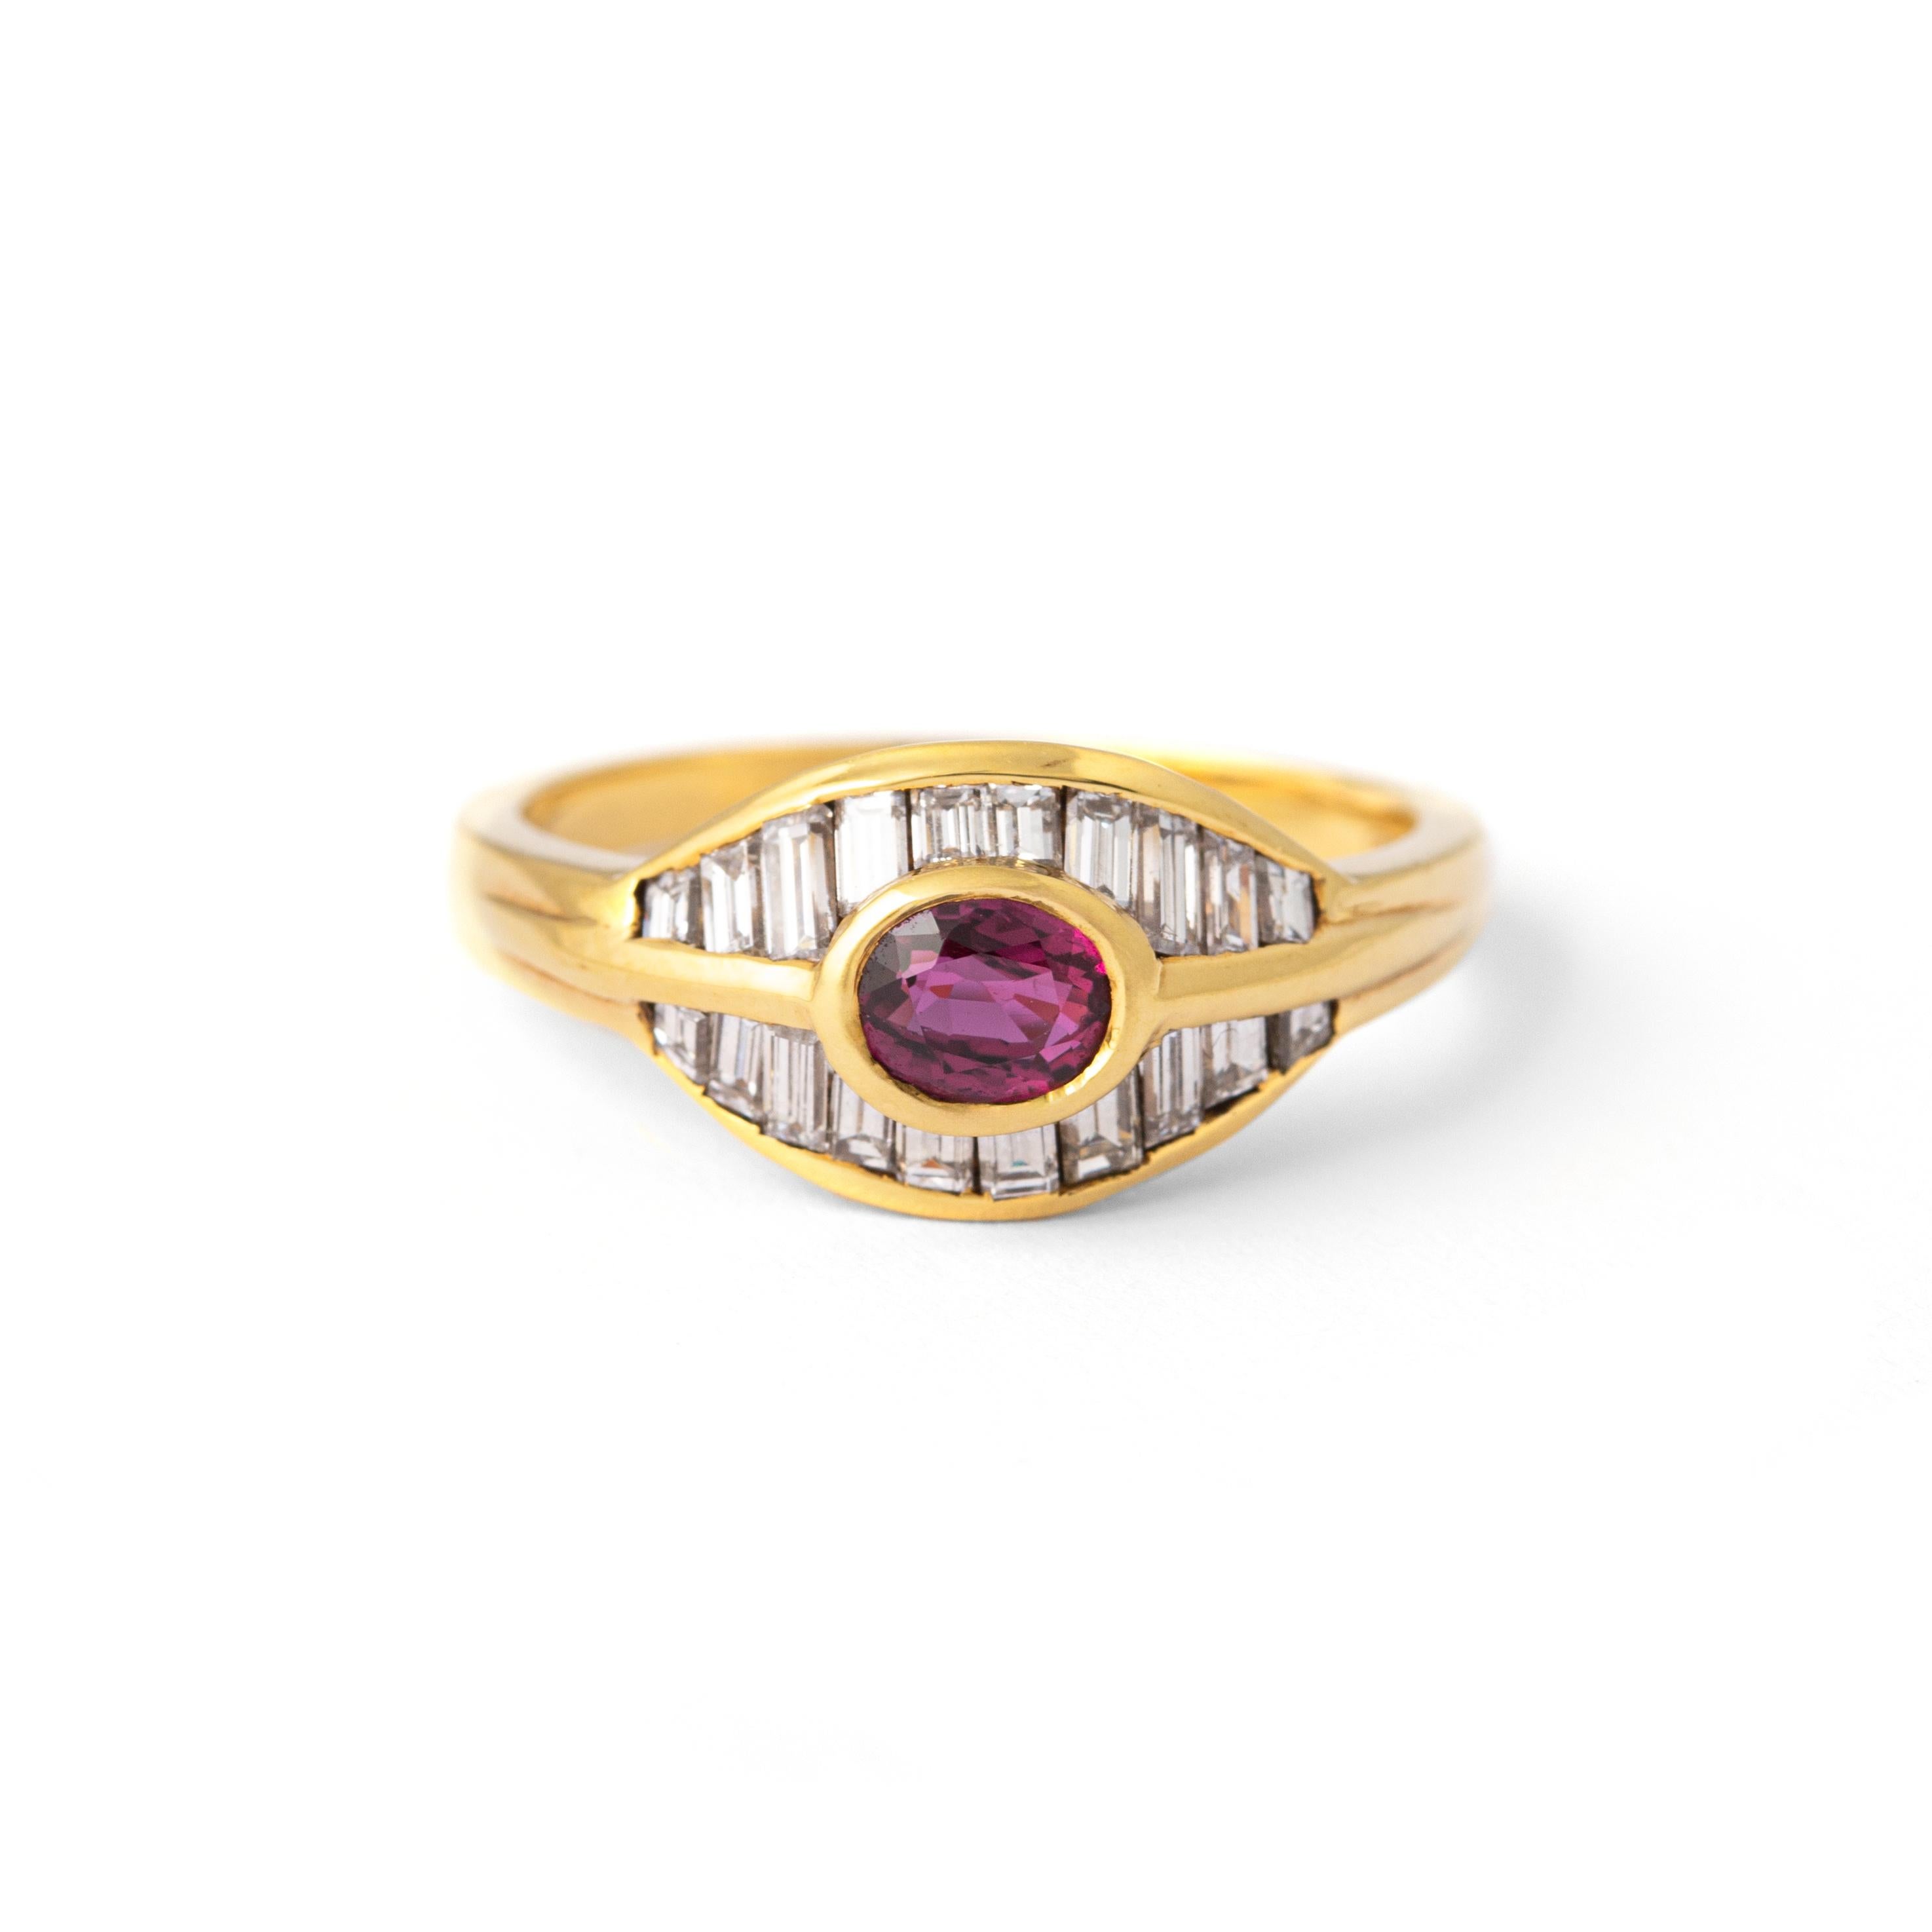 18 Karat Gelbgold Ring mit Rubin und Diamant
In der Mitte ein ovaler Rubin von 0,54 Karat und 20 Diamanten von insgesamt 0,69 Karat, Farbe F und Reinheit VVS2.

Größe: 6,5
Gesamtgewicht: 4,06 Gramm.
